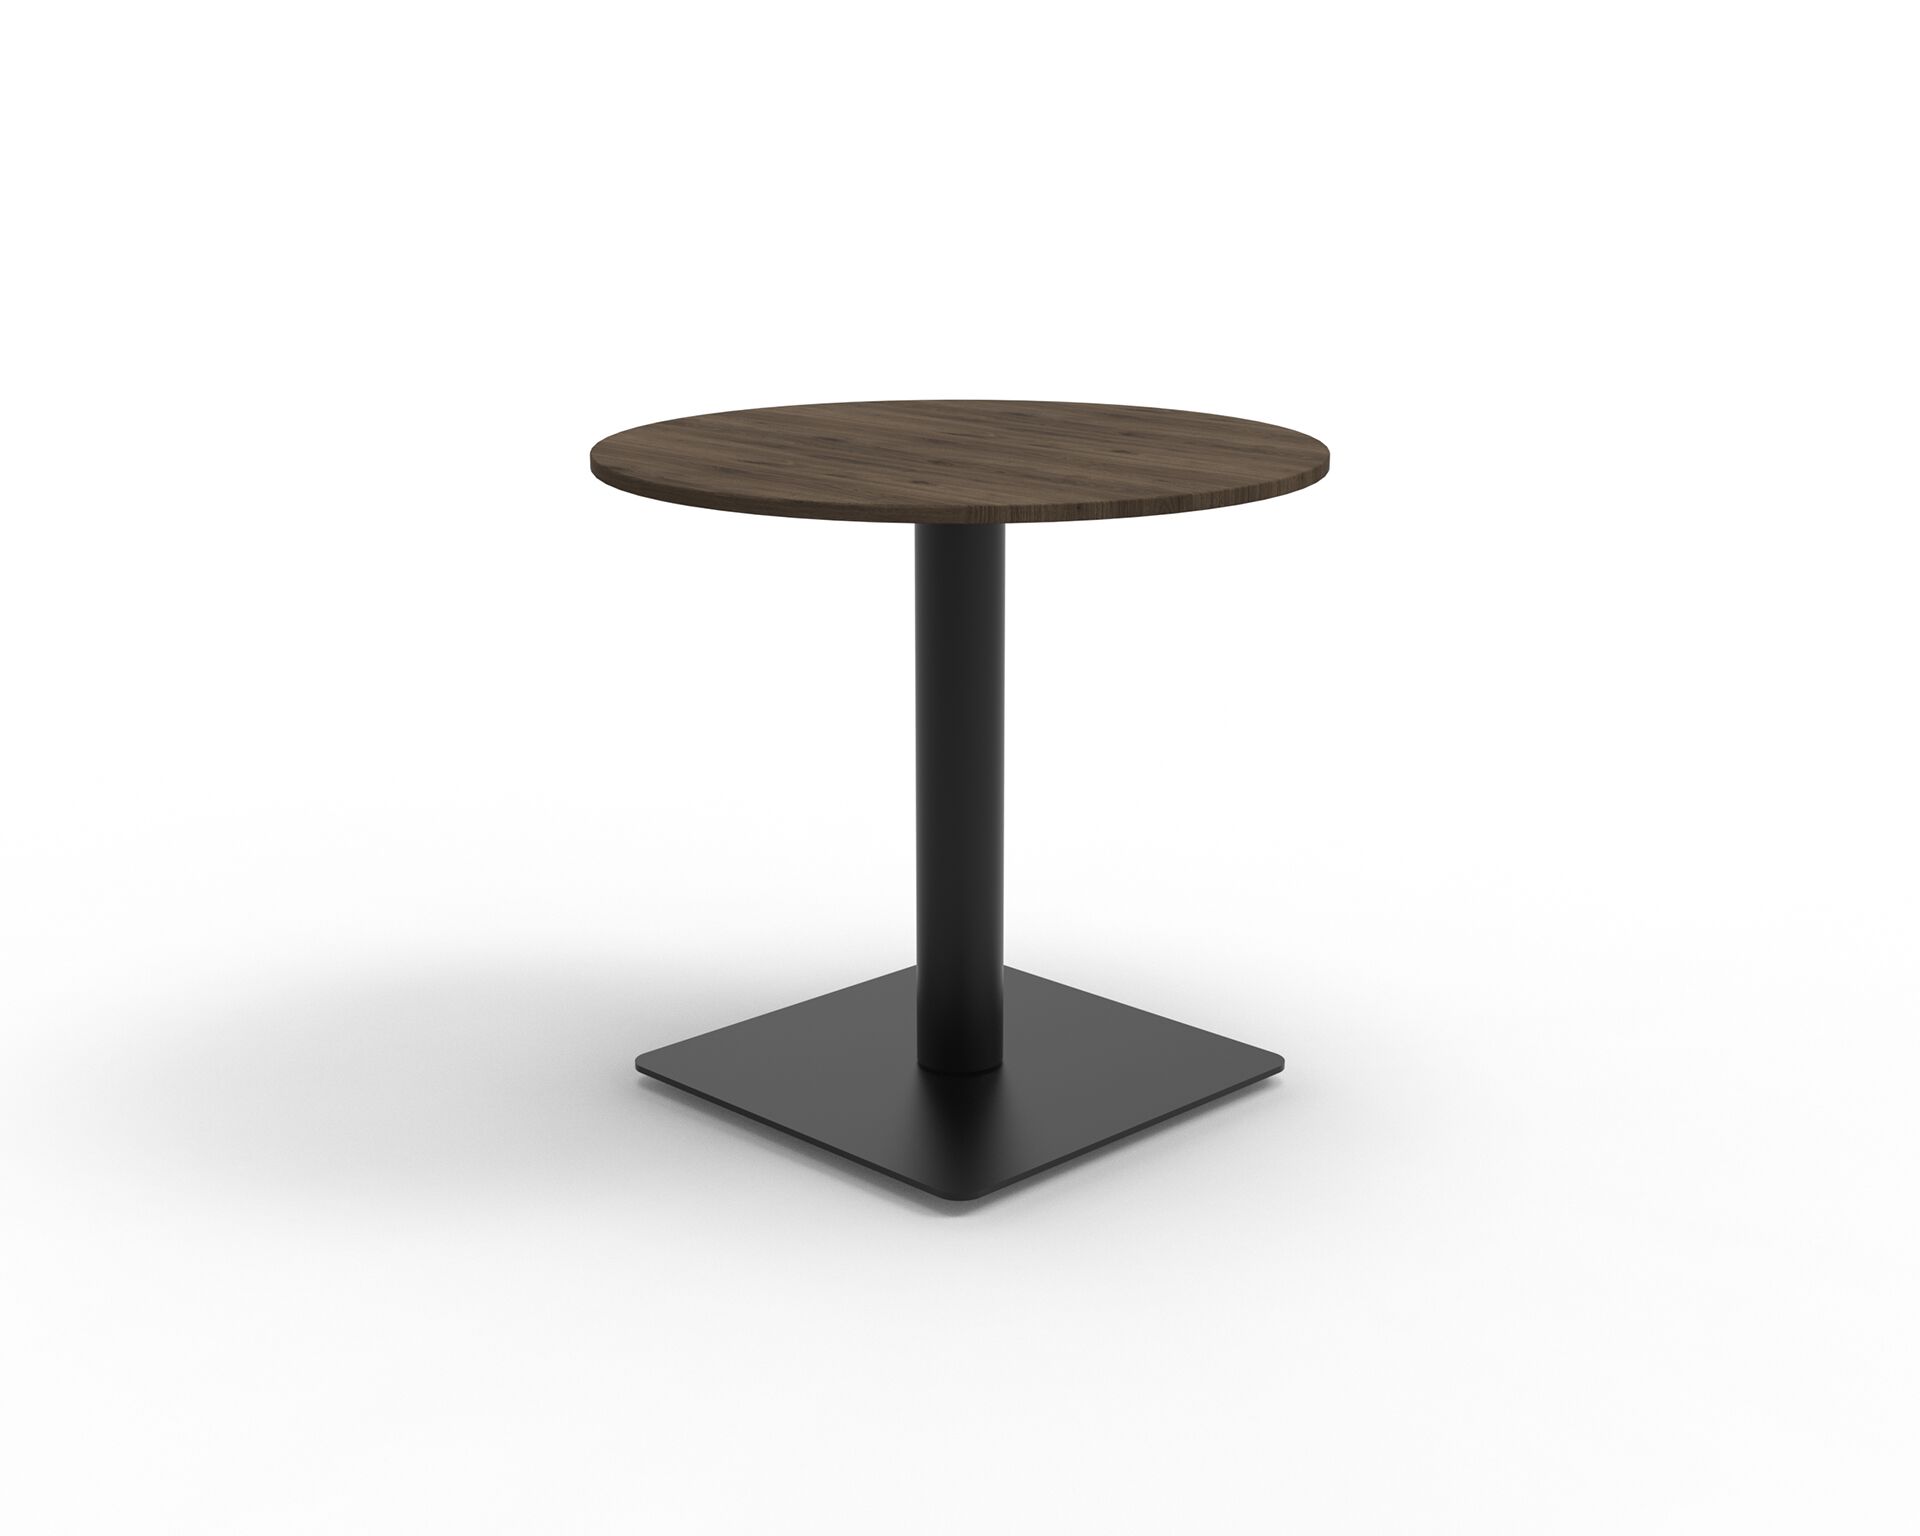 Czarna metalowa prosta podstawa kwadratowa do stołu z ciemno drewnianym okrągłym blatem B10 B-Group